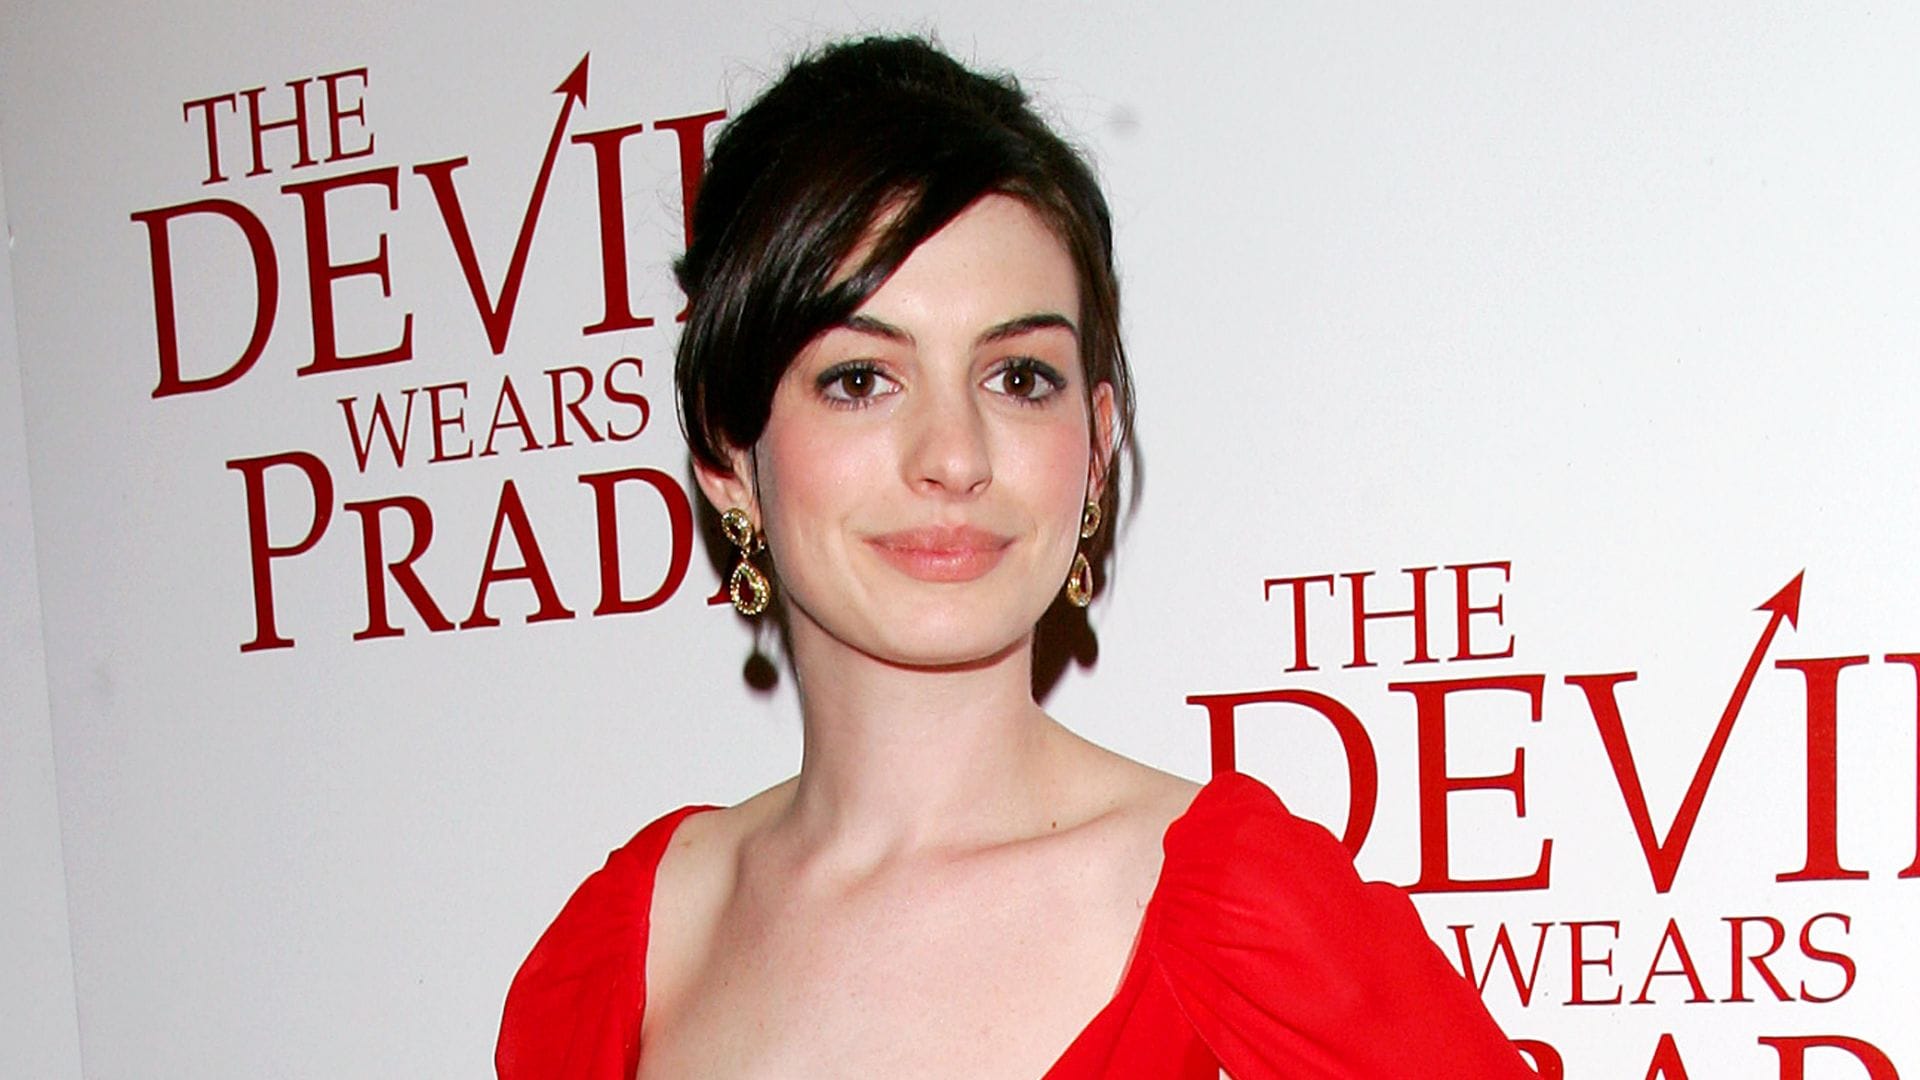 'The Devil Wears Prada' sequel is in development despite Anne Hathaway's skepticism